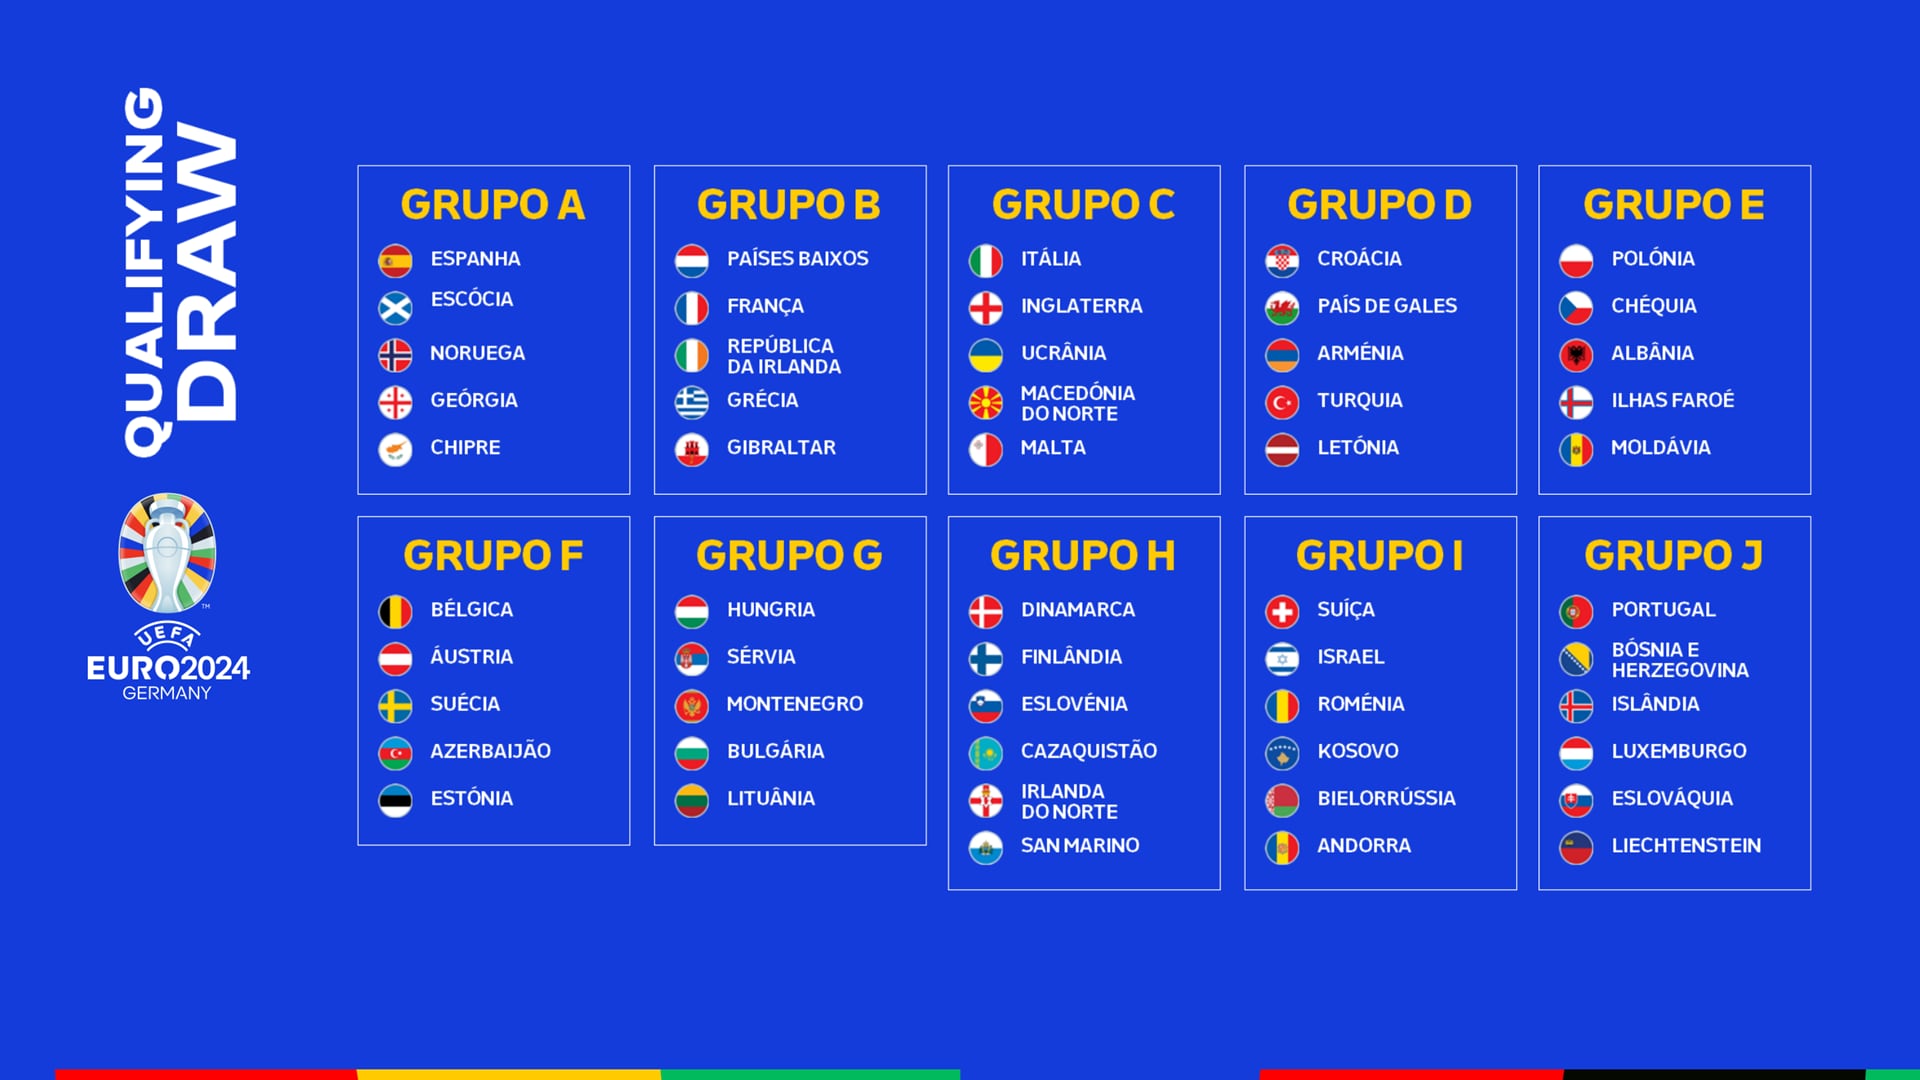 アフリカネイションズカップ2017予選・グループE